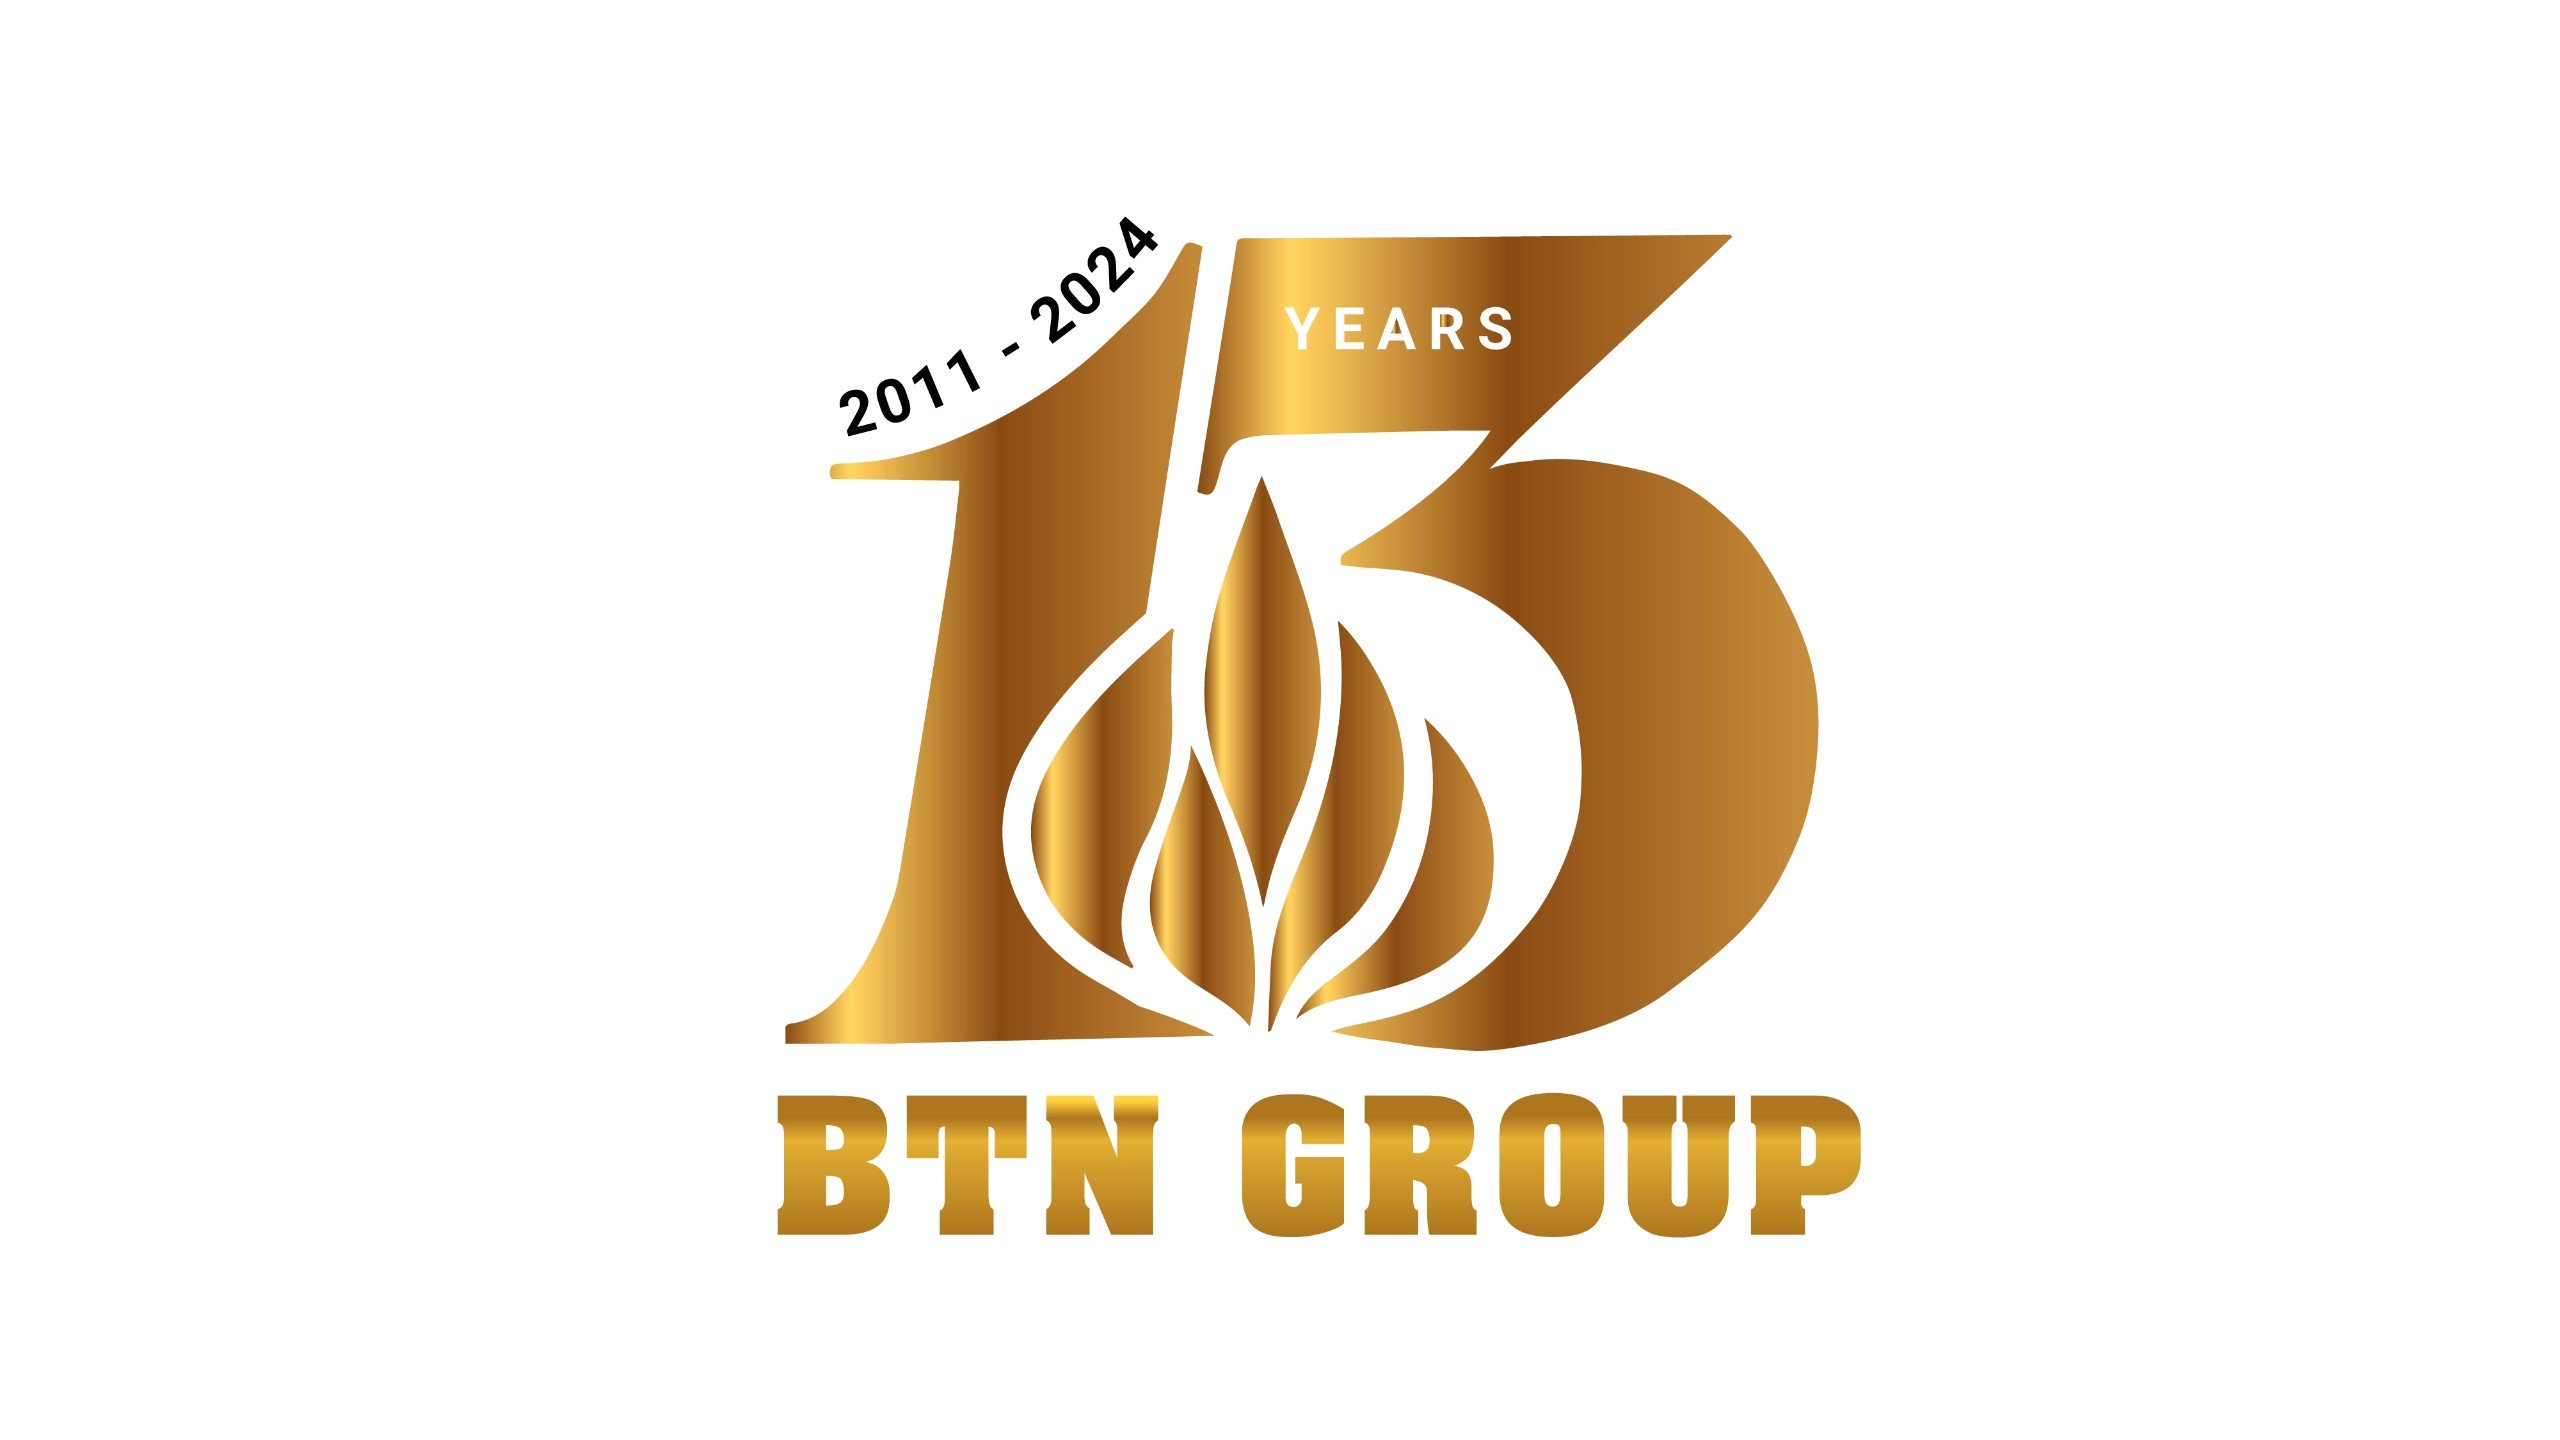 Chào mừng BTN Group kỷ niệm 13 năm thành lập!